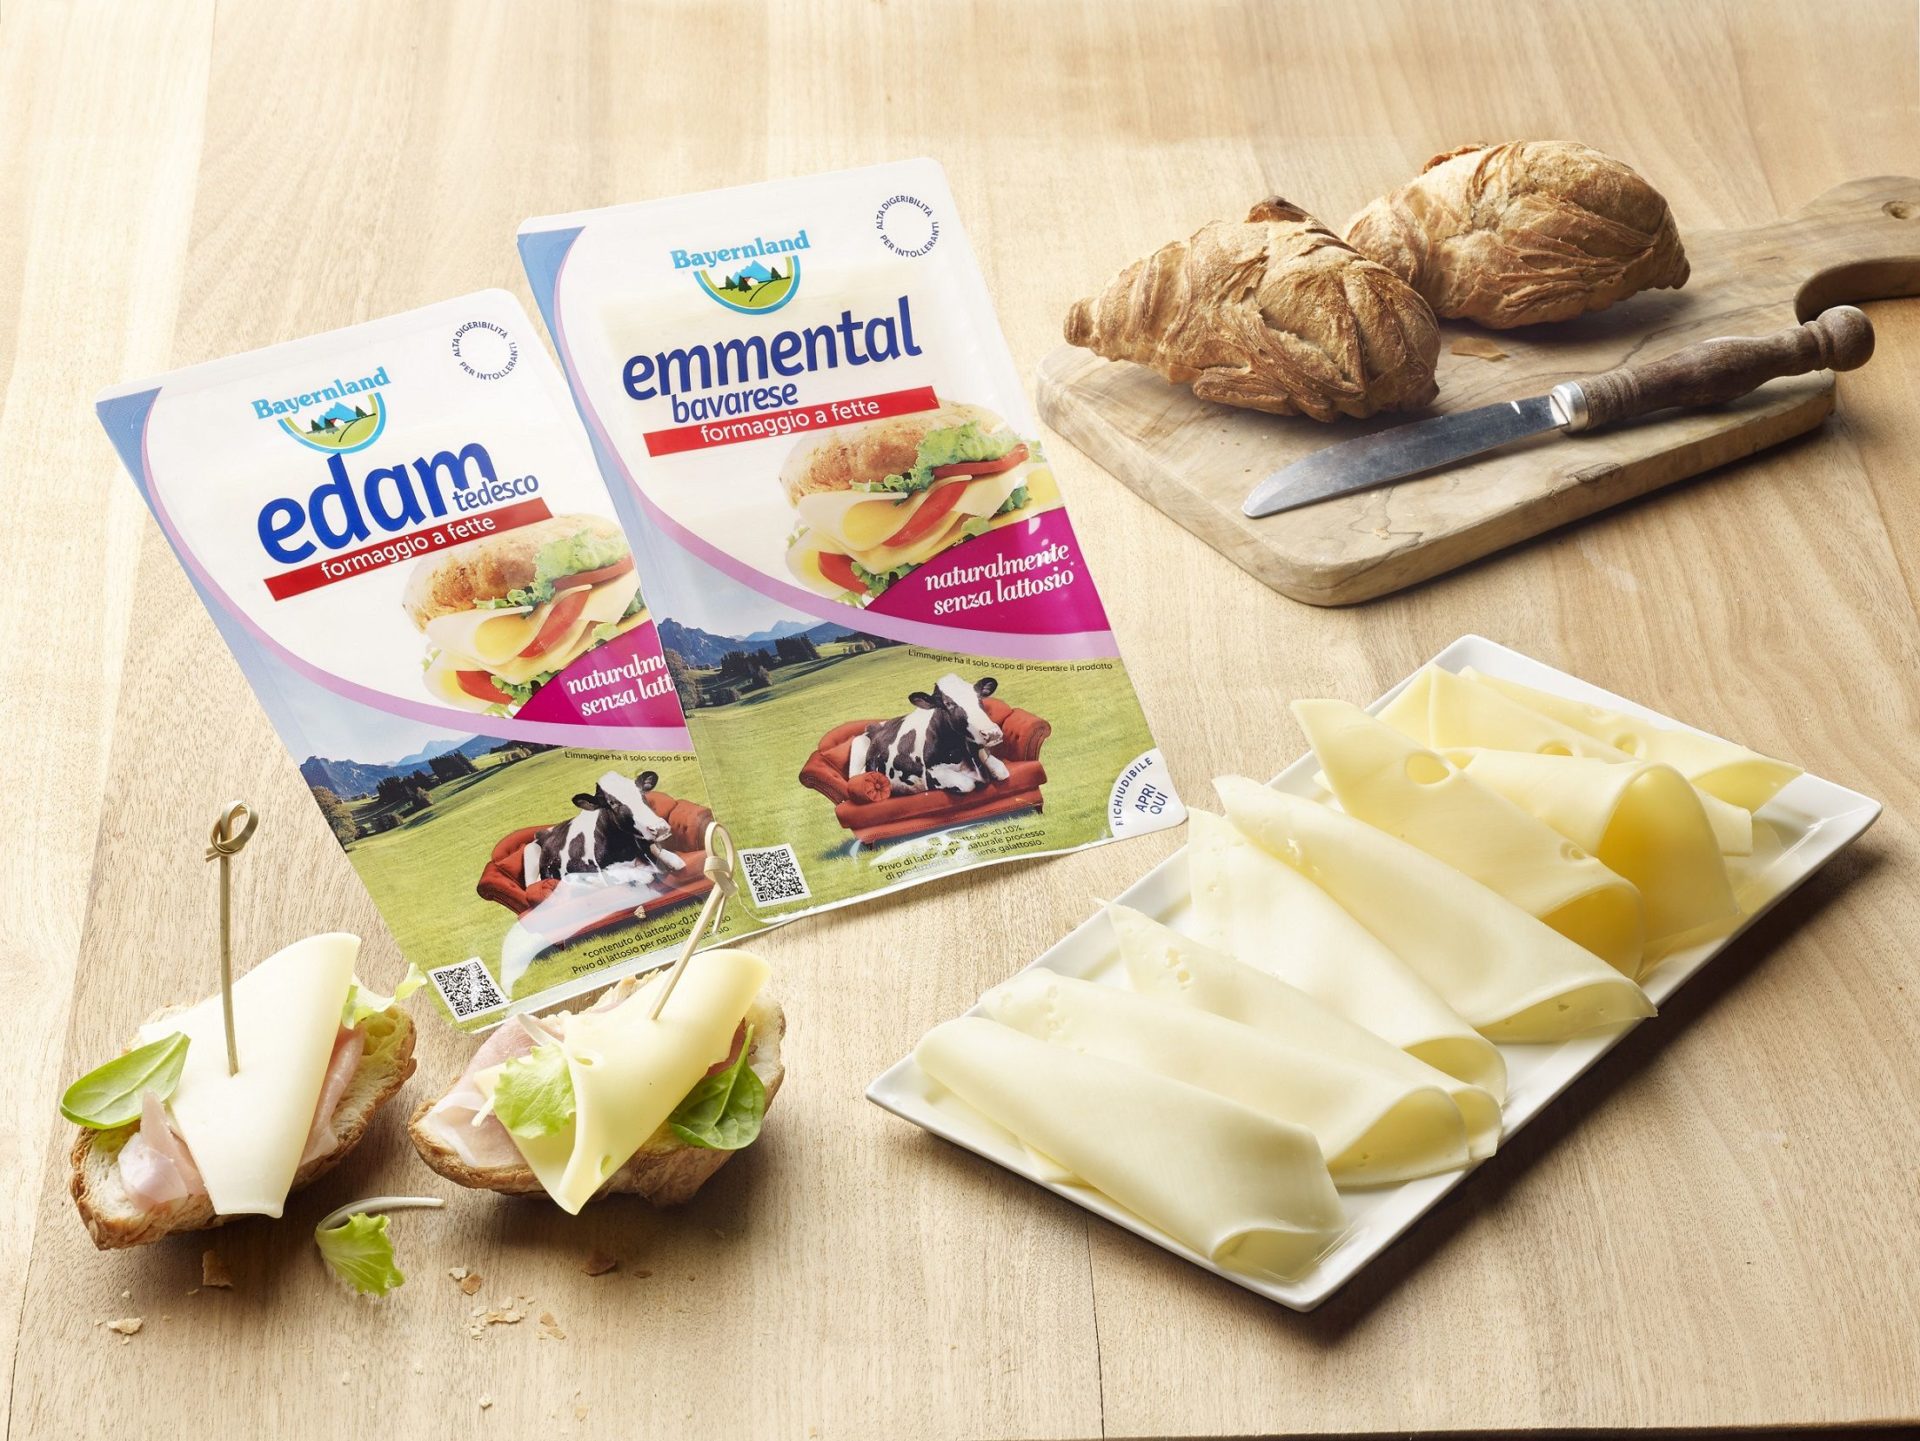 Bayernland: i formaggi affettati Edam ed Emmental senza lattosio!